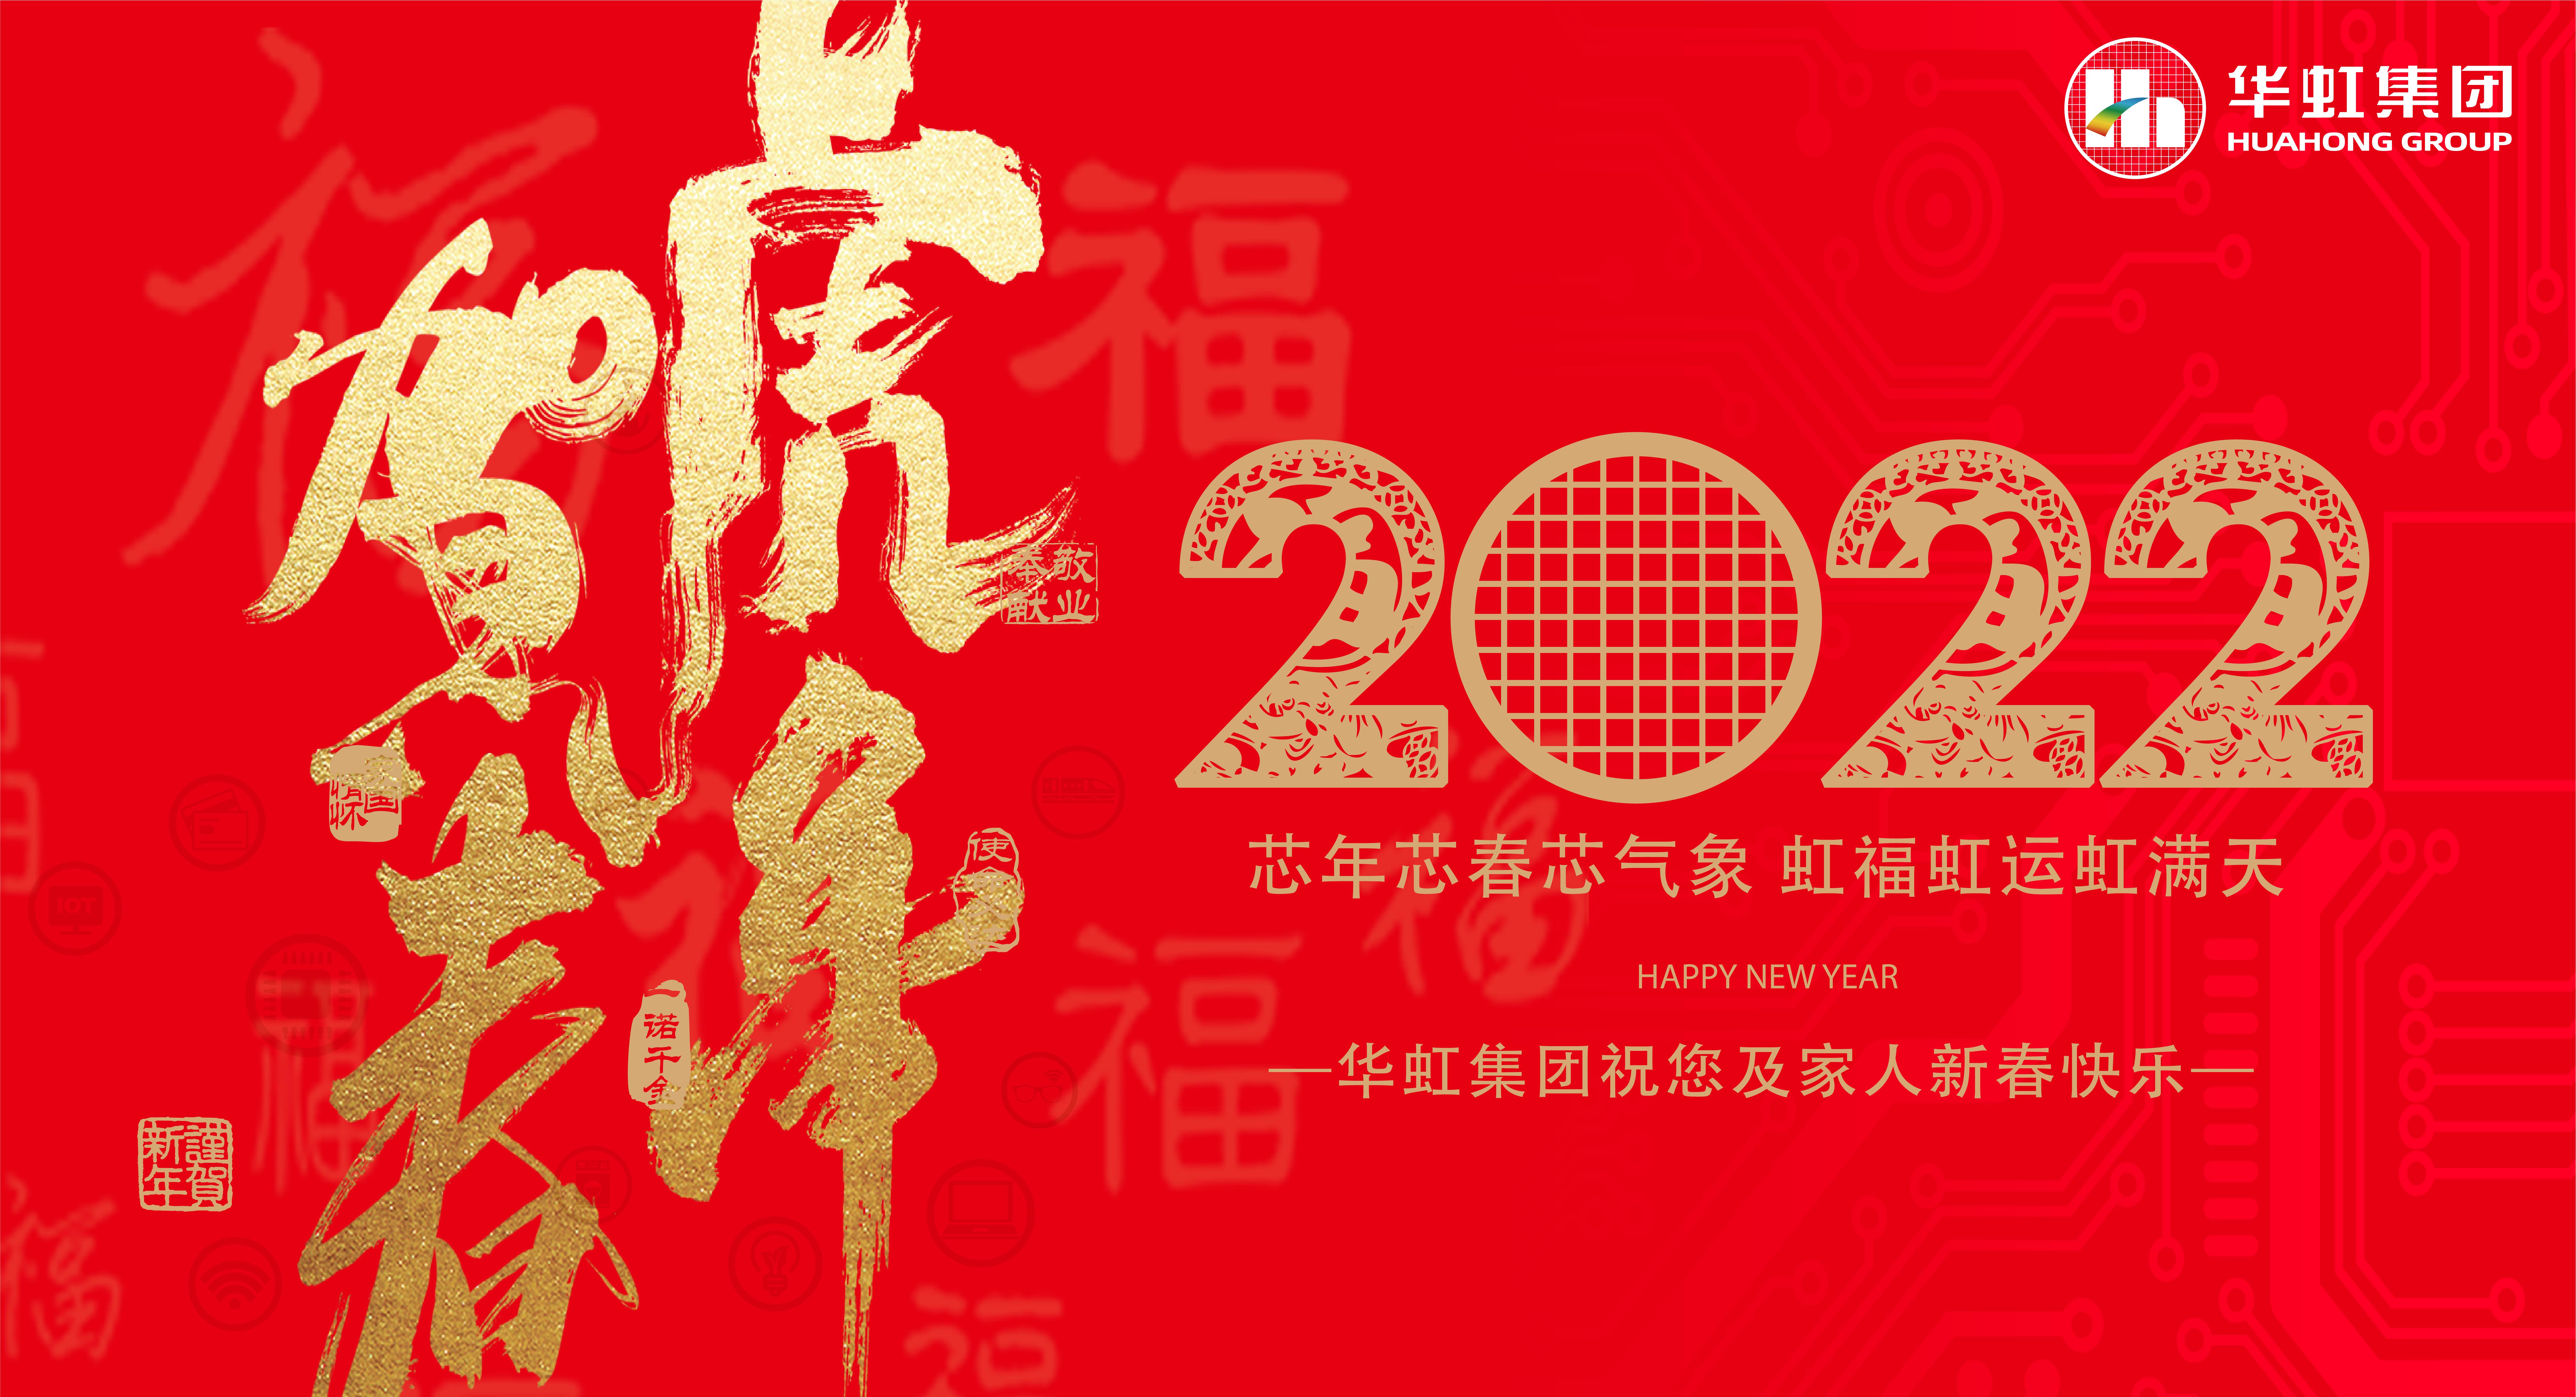 pg电子娱乐十大平台·(中国)官方网站祝您及家人新春快乐